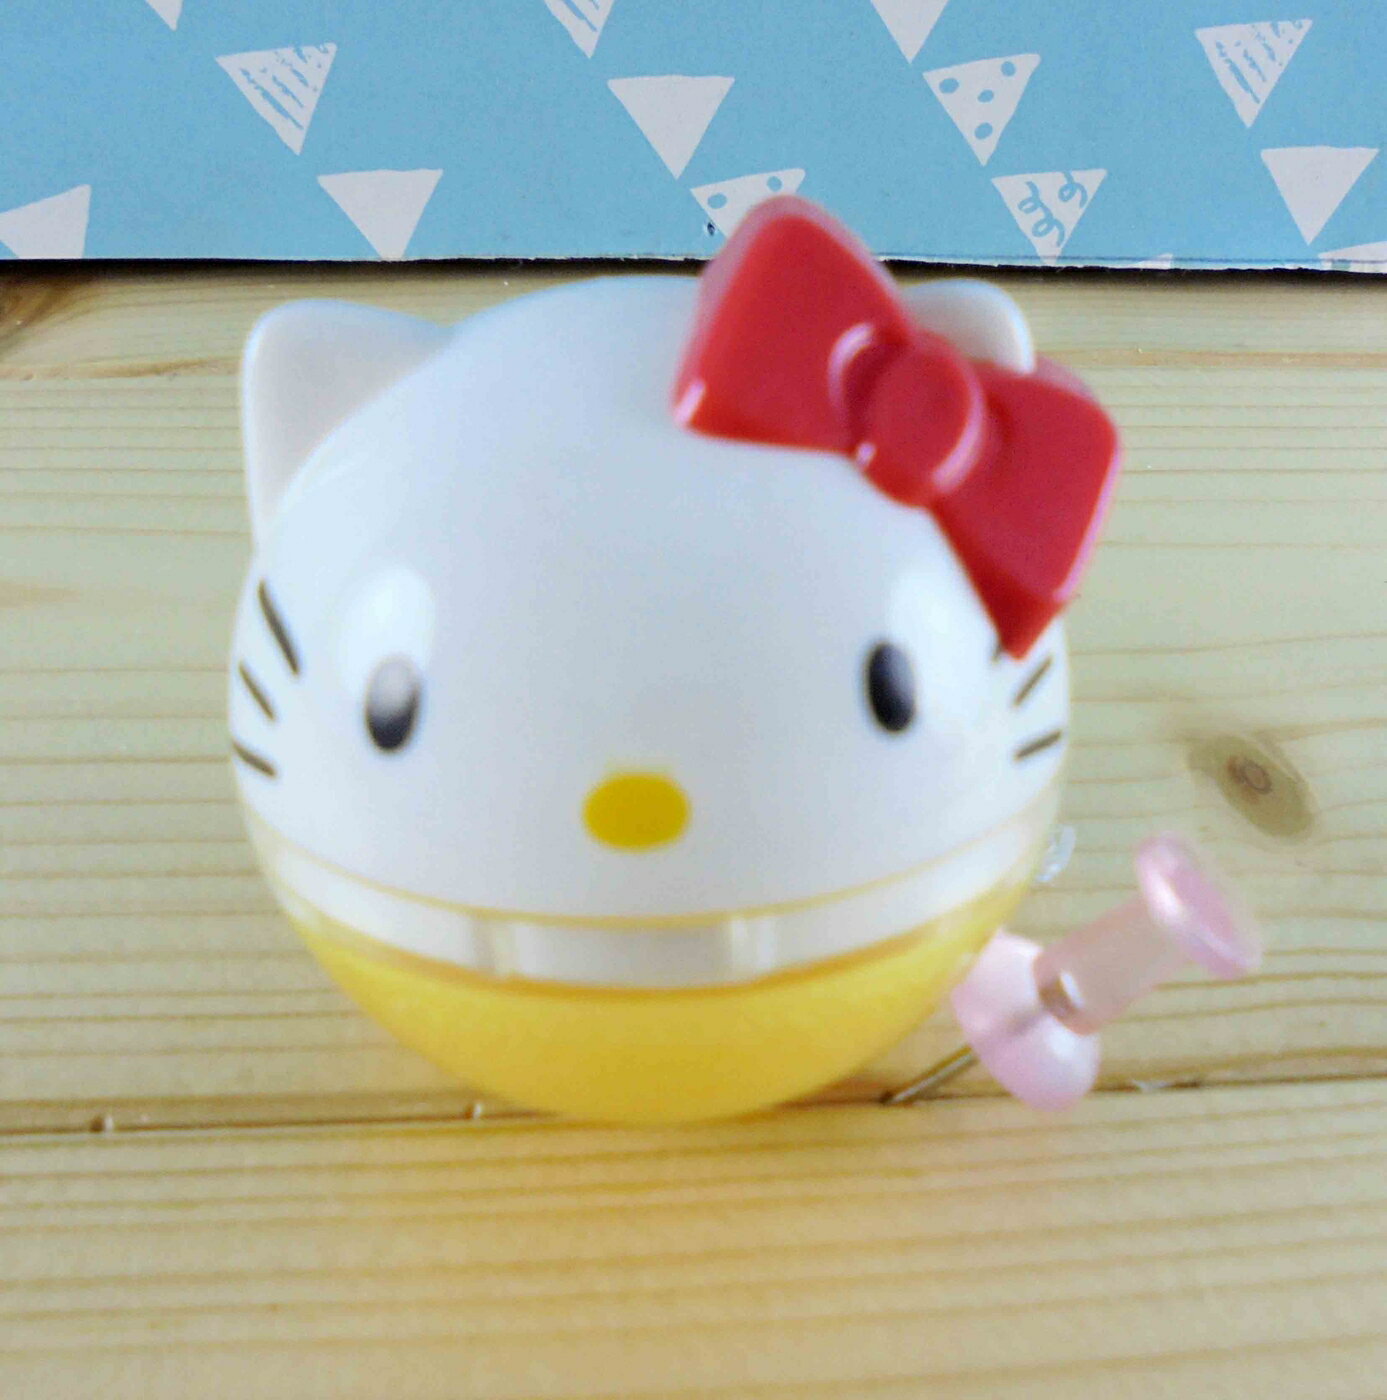 【震撼精品百貨】Hello Kitty 凱蒂貓 KITTY唇蜜-造型外殼-紅圓 震撼日式精品百貨